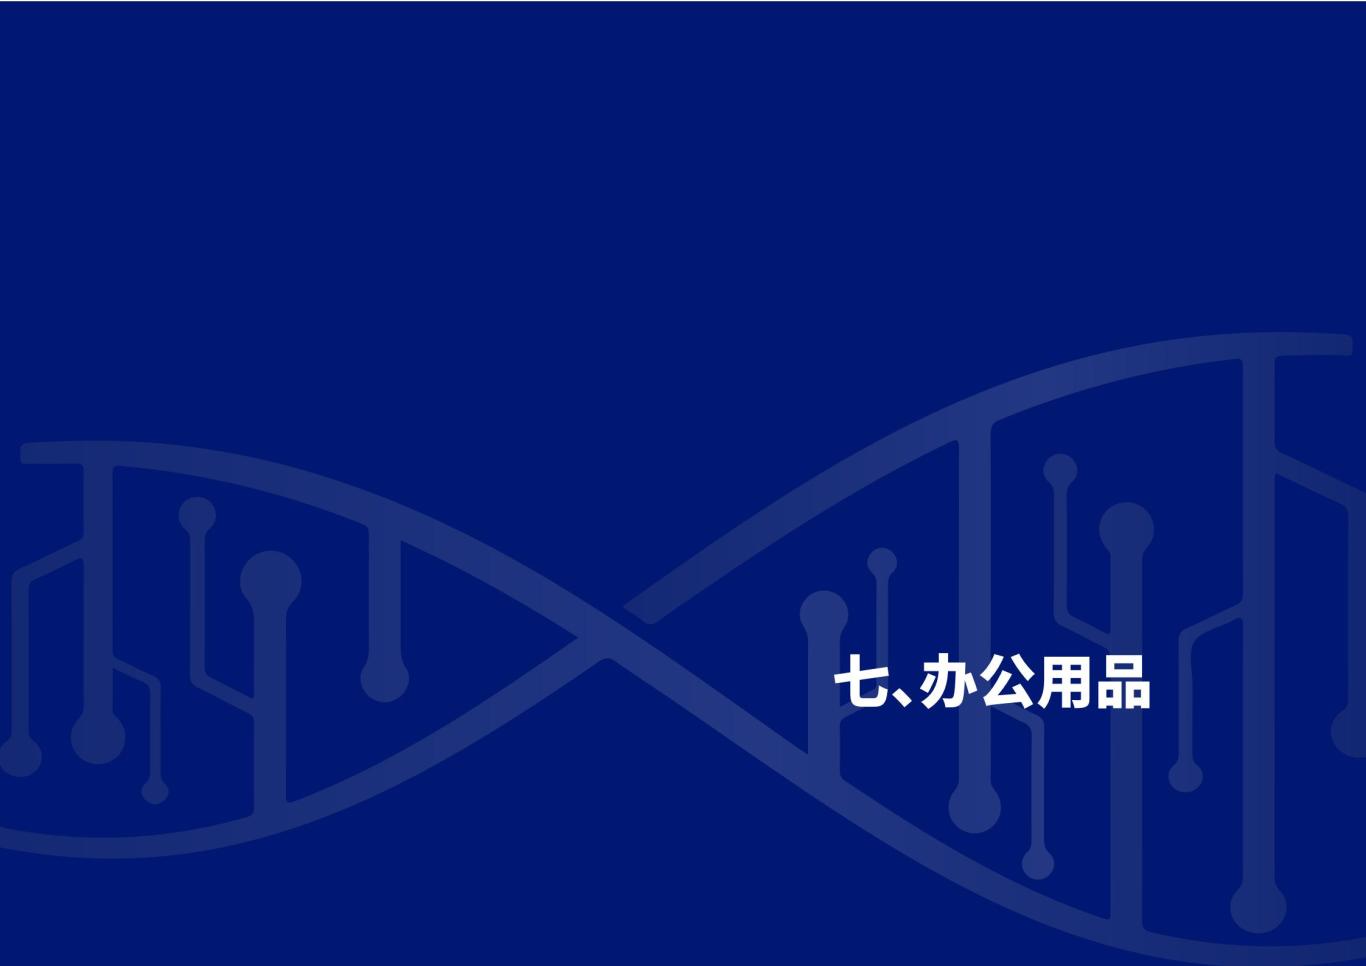 深圳合成生物学创新研究院品牌设计规范图25